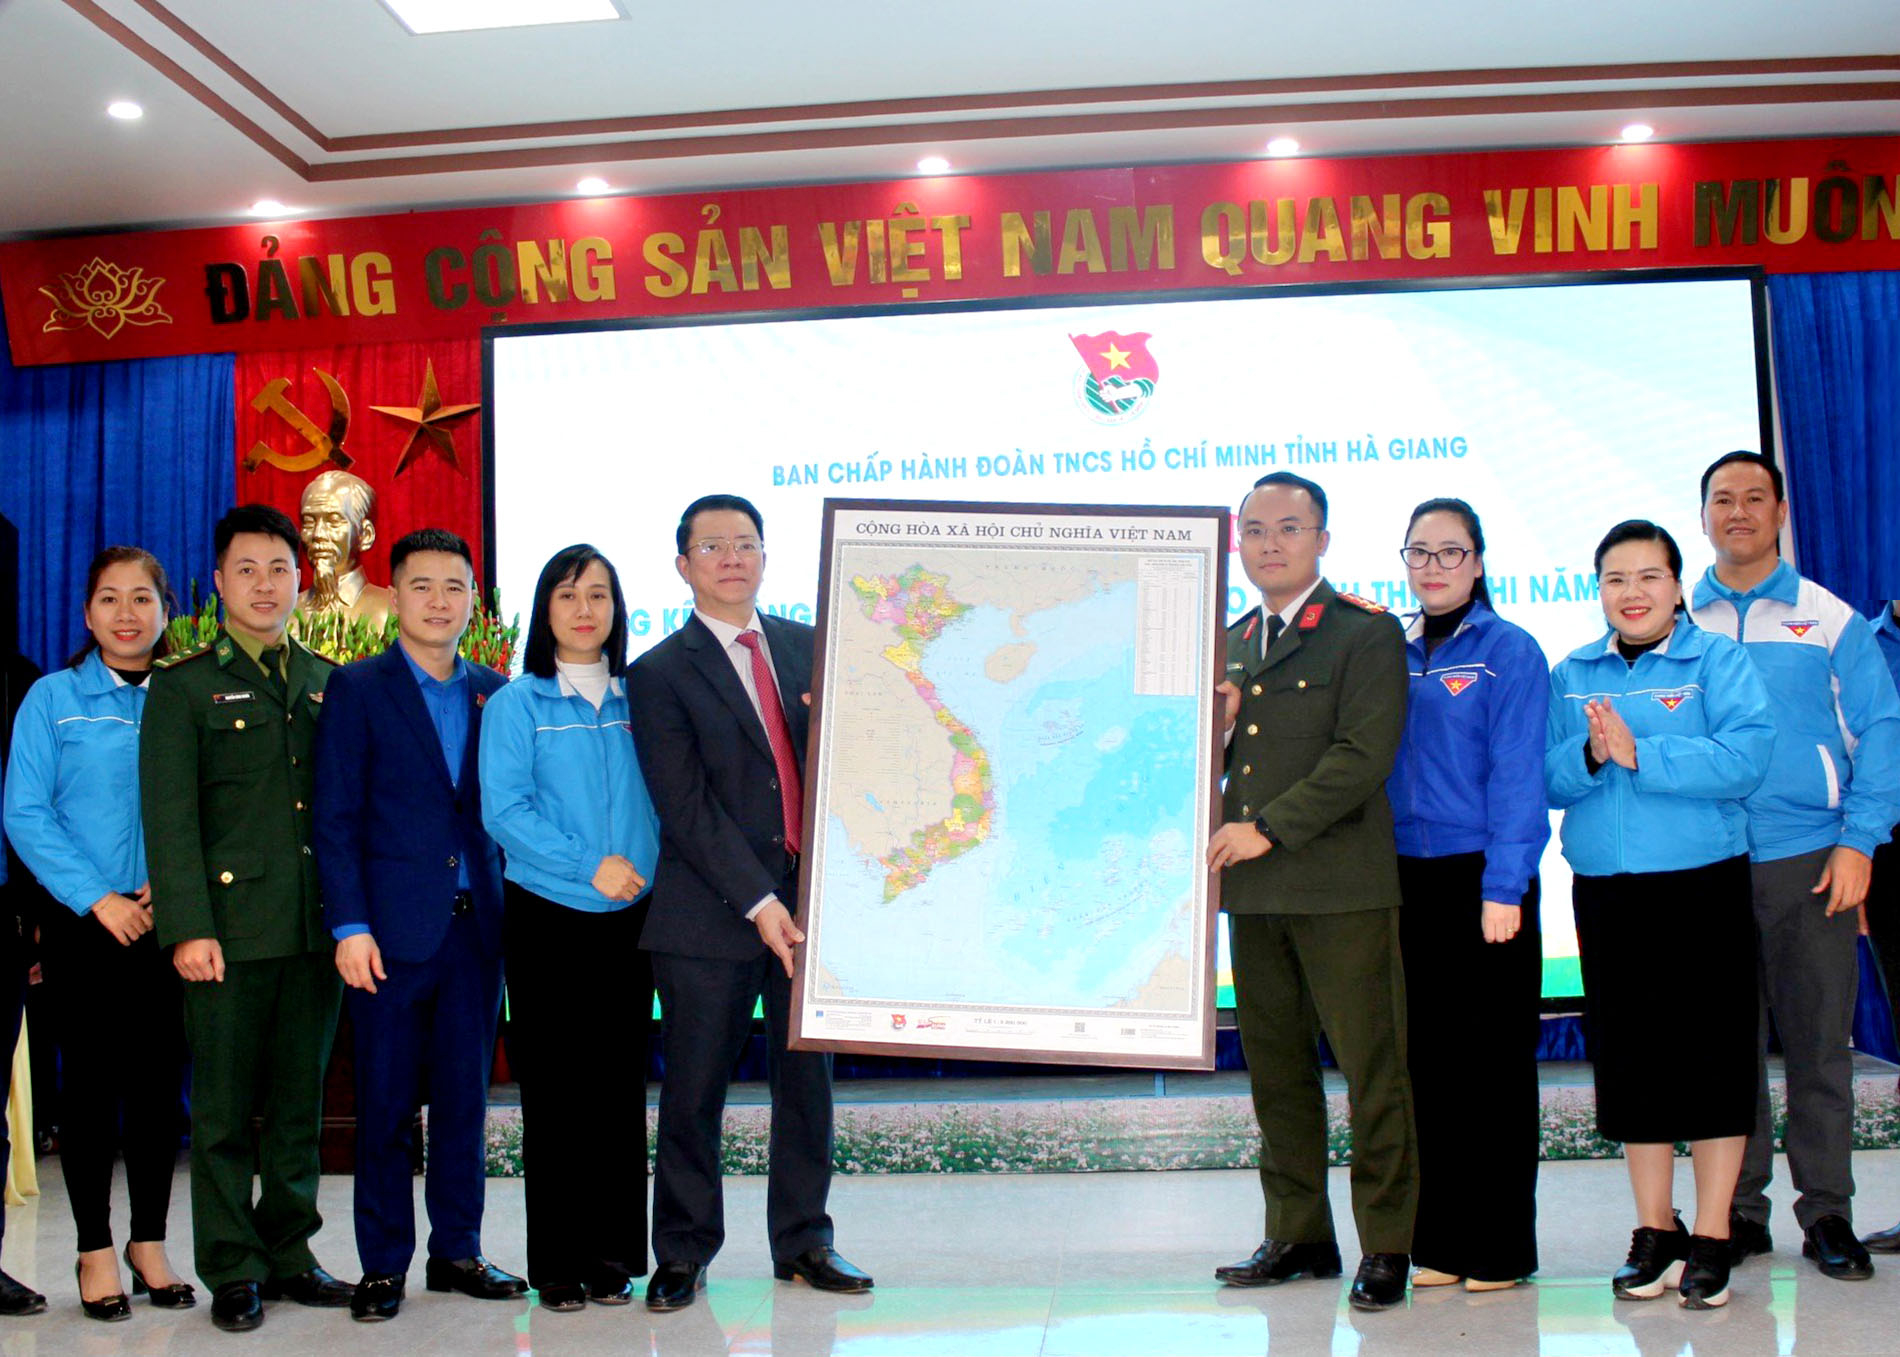 Đồng chí Trần Mạnh Lợi, Ủy viên BTV Tỉnh ủy, Trưởng Ban Dân vận Tỉnh ủy trao tặng bản đồ Việt Nam cho các huyện, thành đoàn và đoàn trực thuộc.